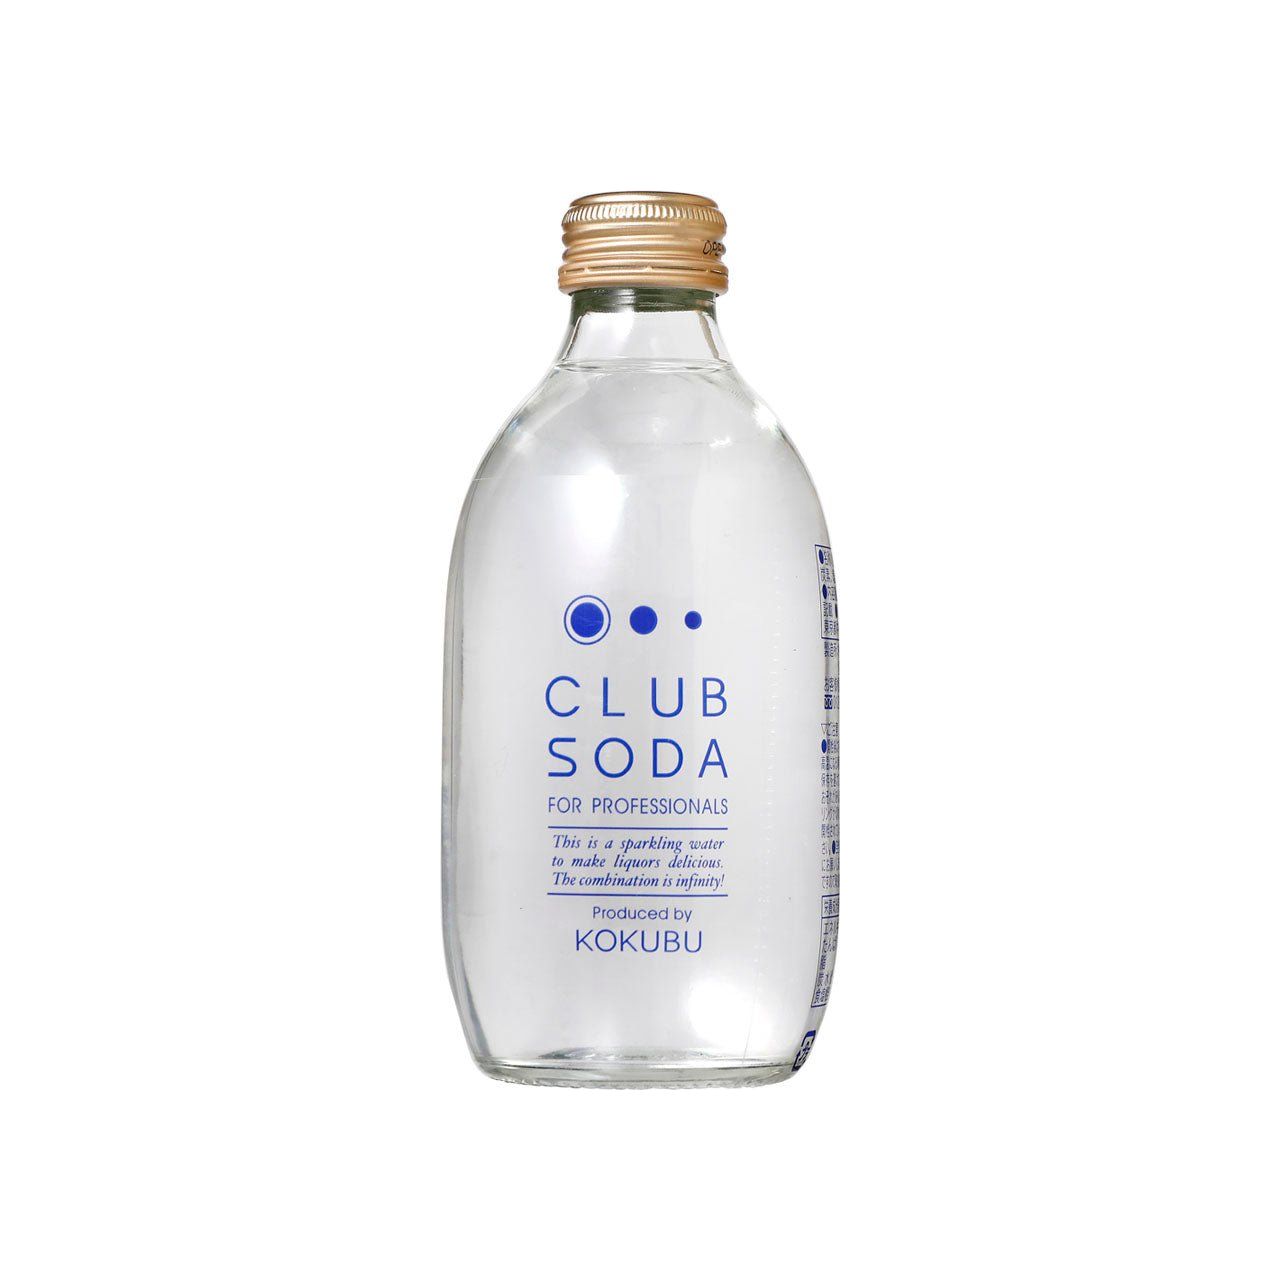 KOKUBU CLUB SODA bottle